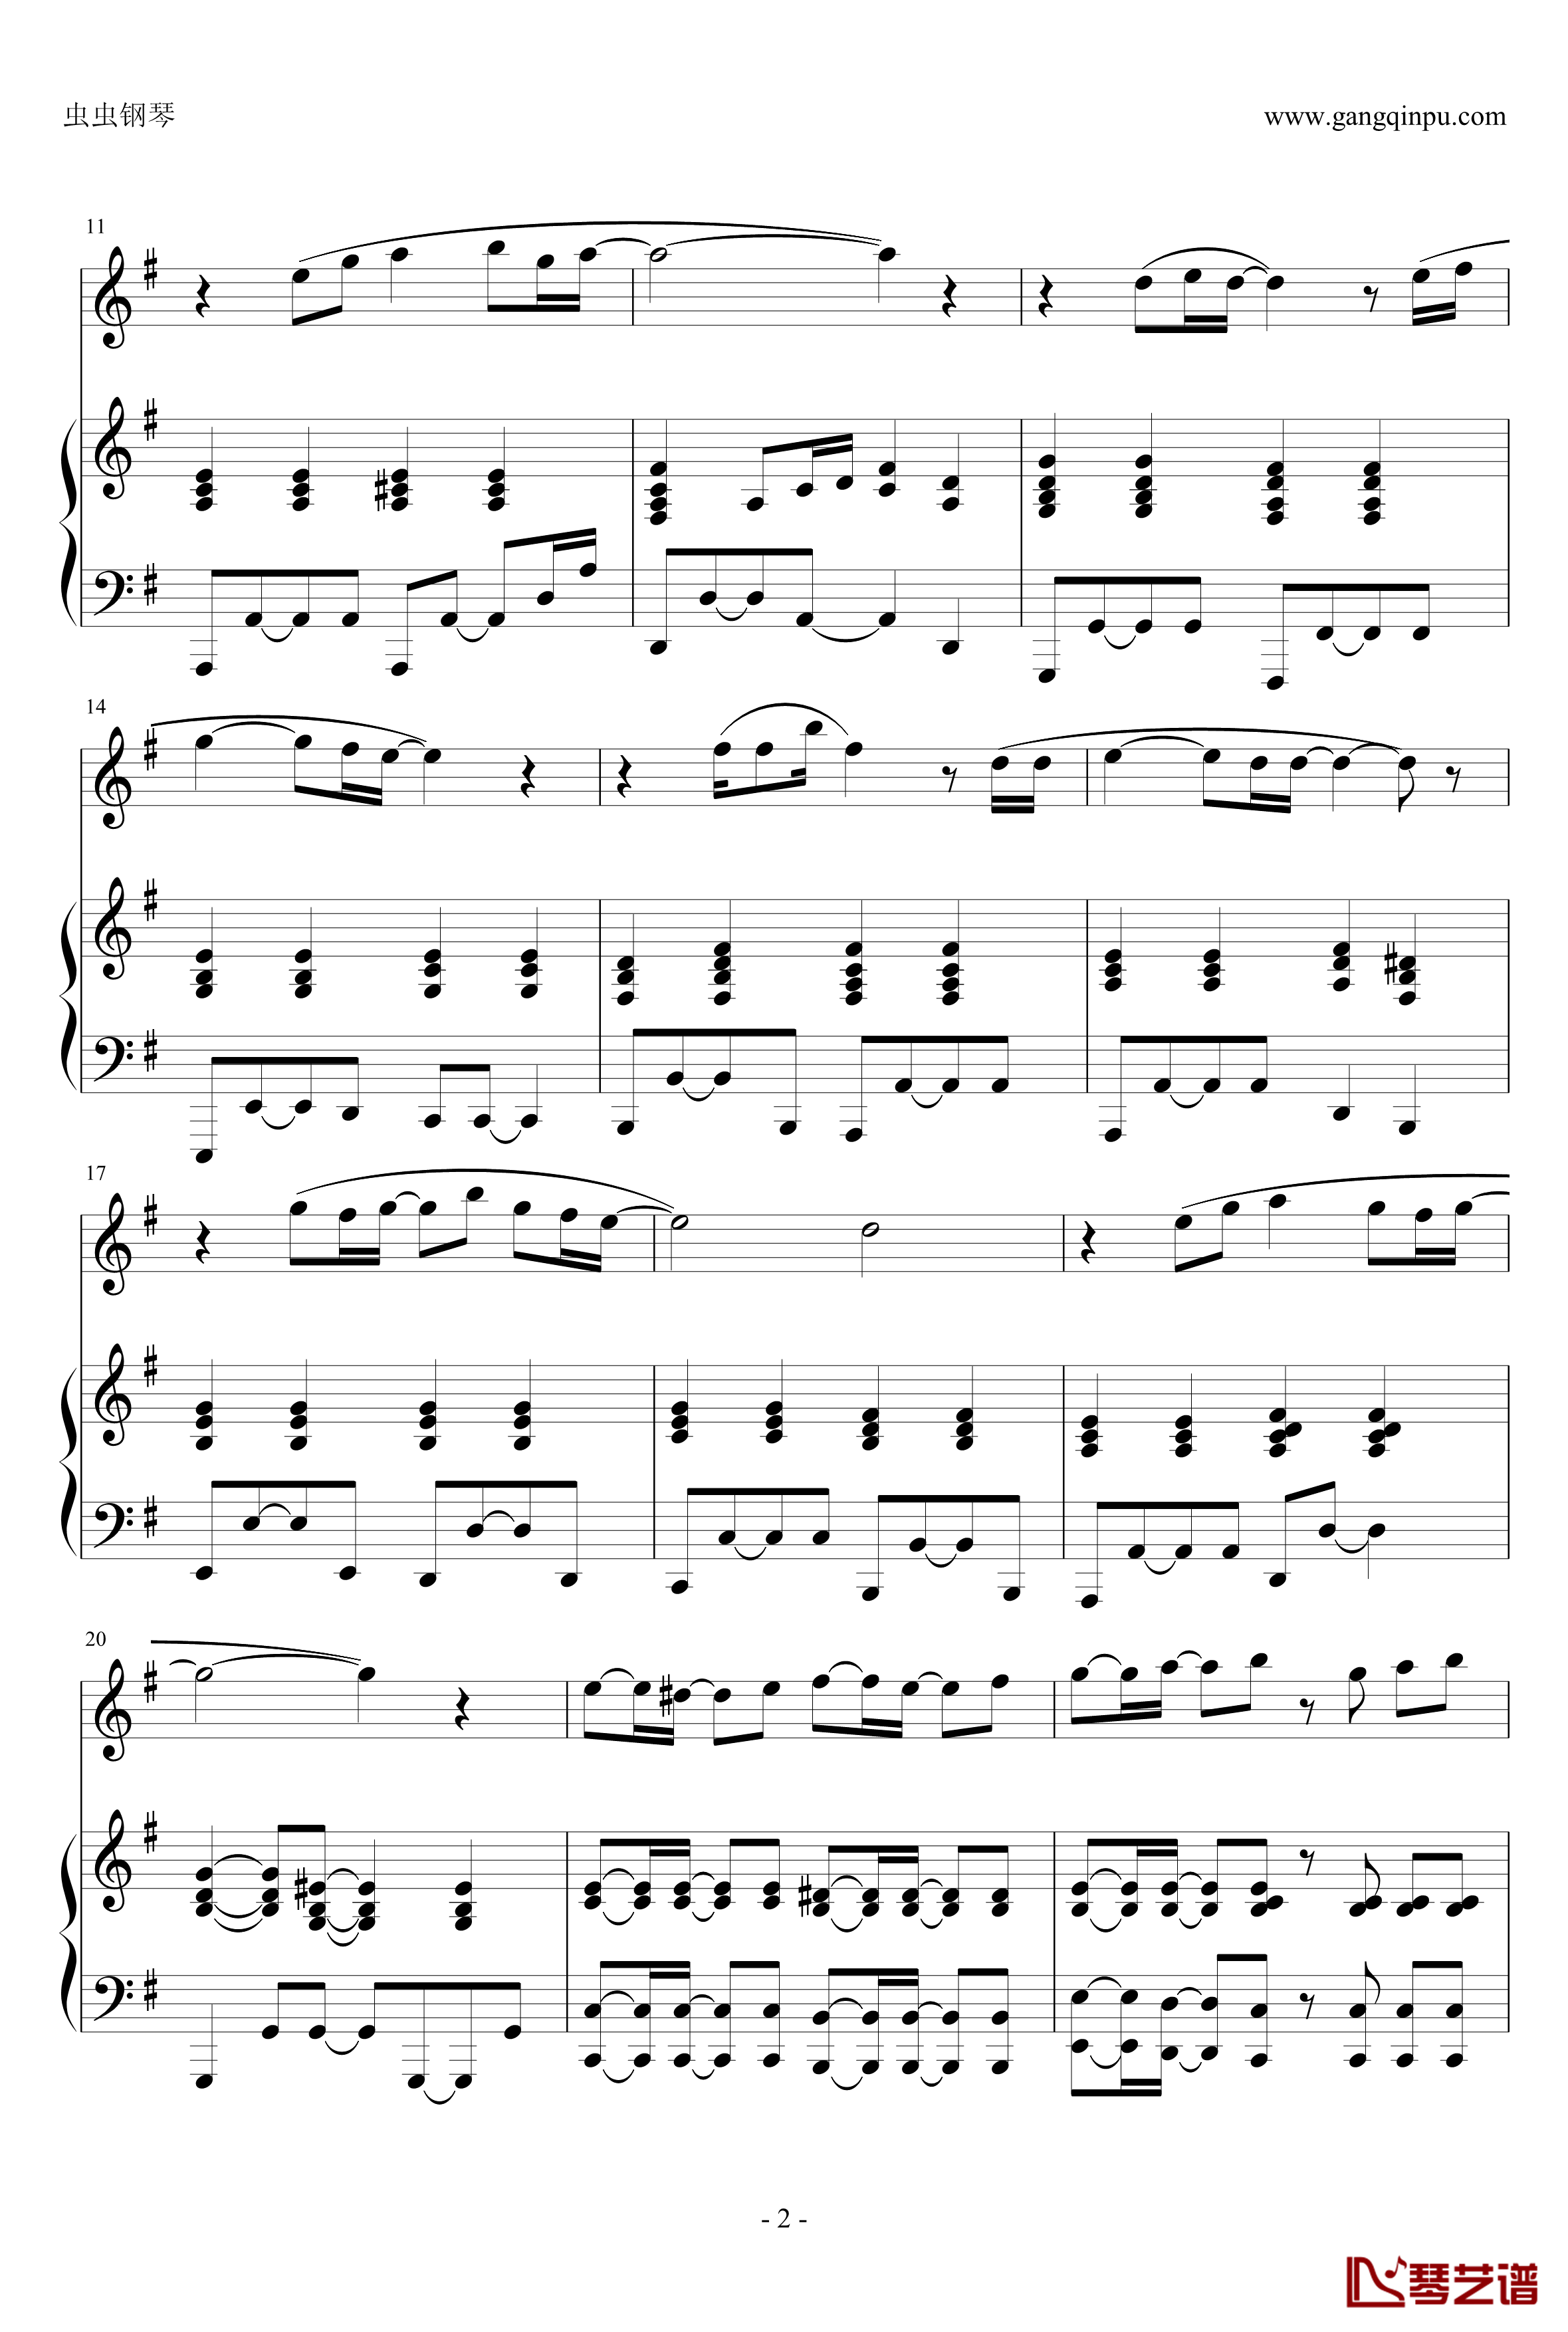 マイバラード钢琴谱-钢琴伴奏谱-日常ED-162